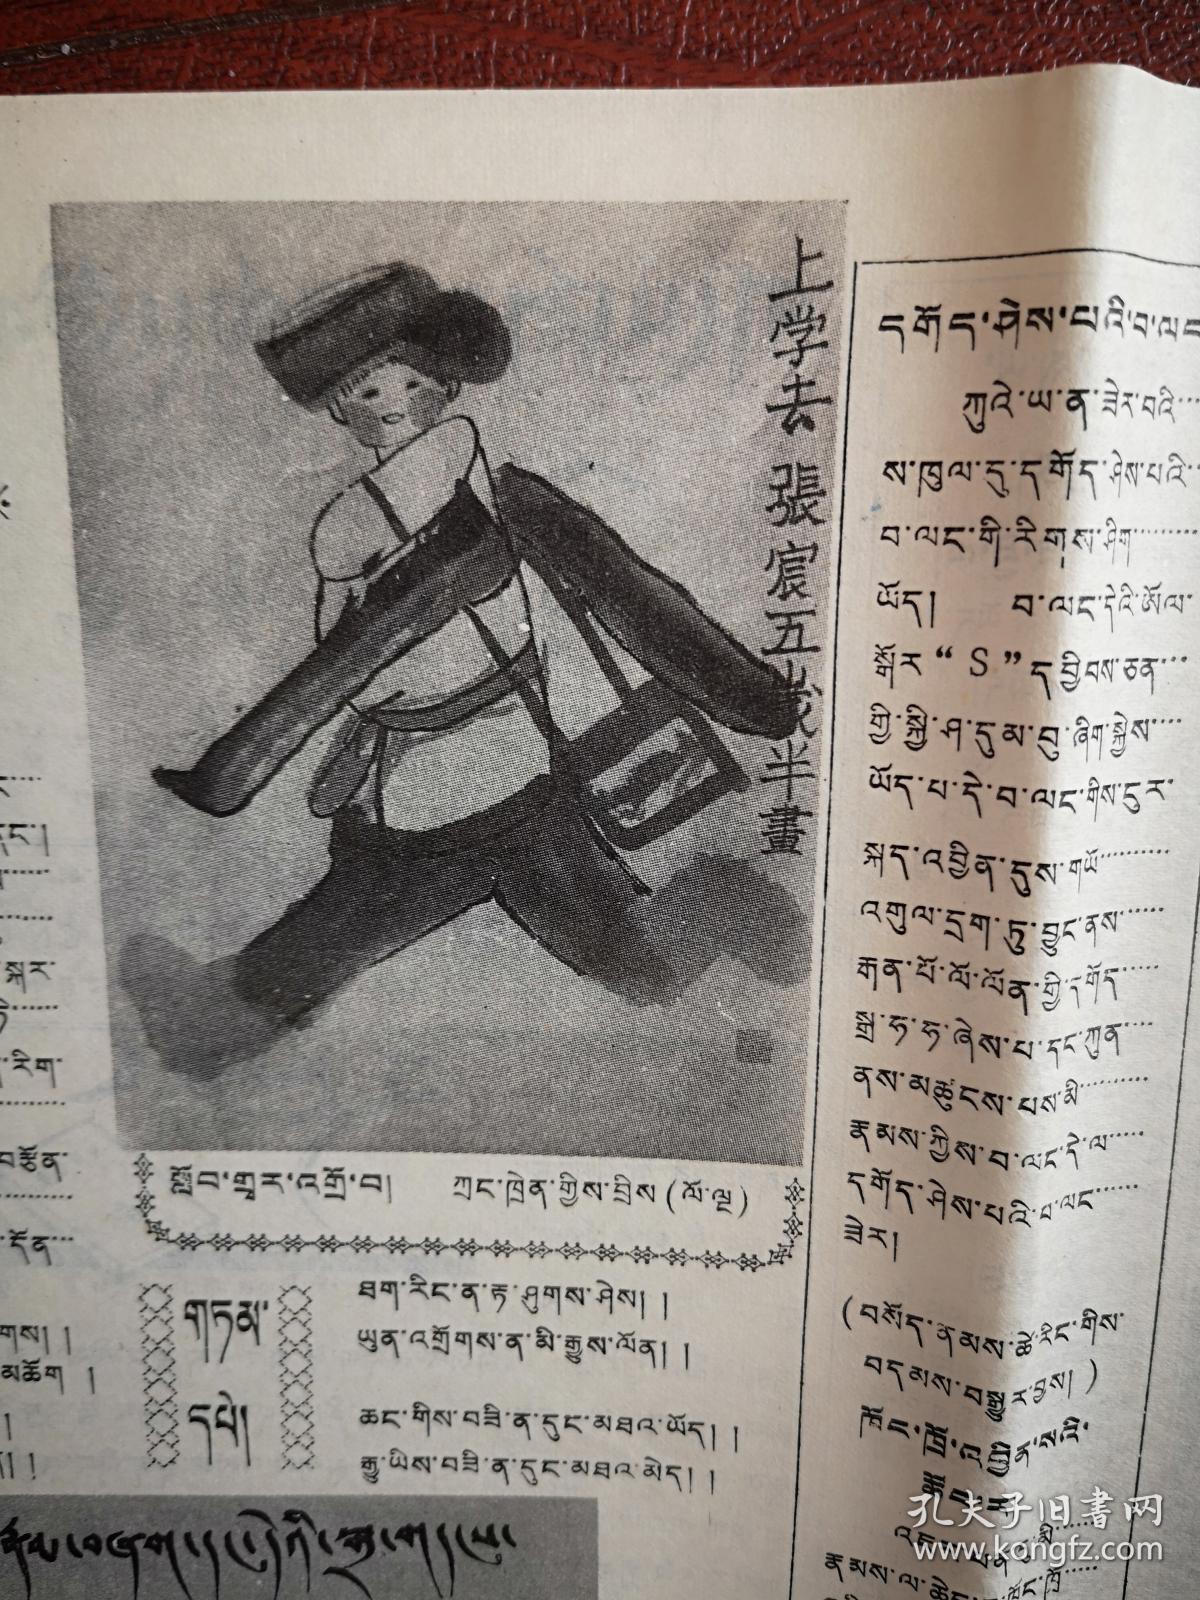 刚坚少年报（藏文）1990年5月15日，故宫，张宸画作，连环画，童话故事等，全国惟一的藏文少年报，少见。